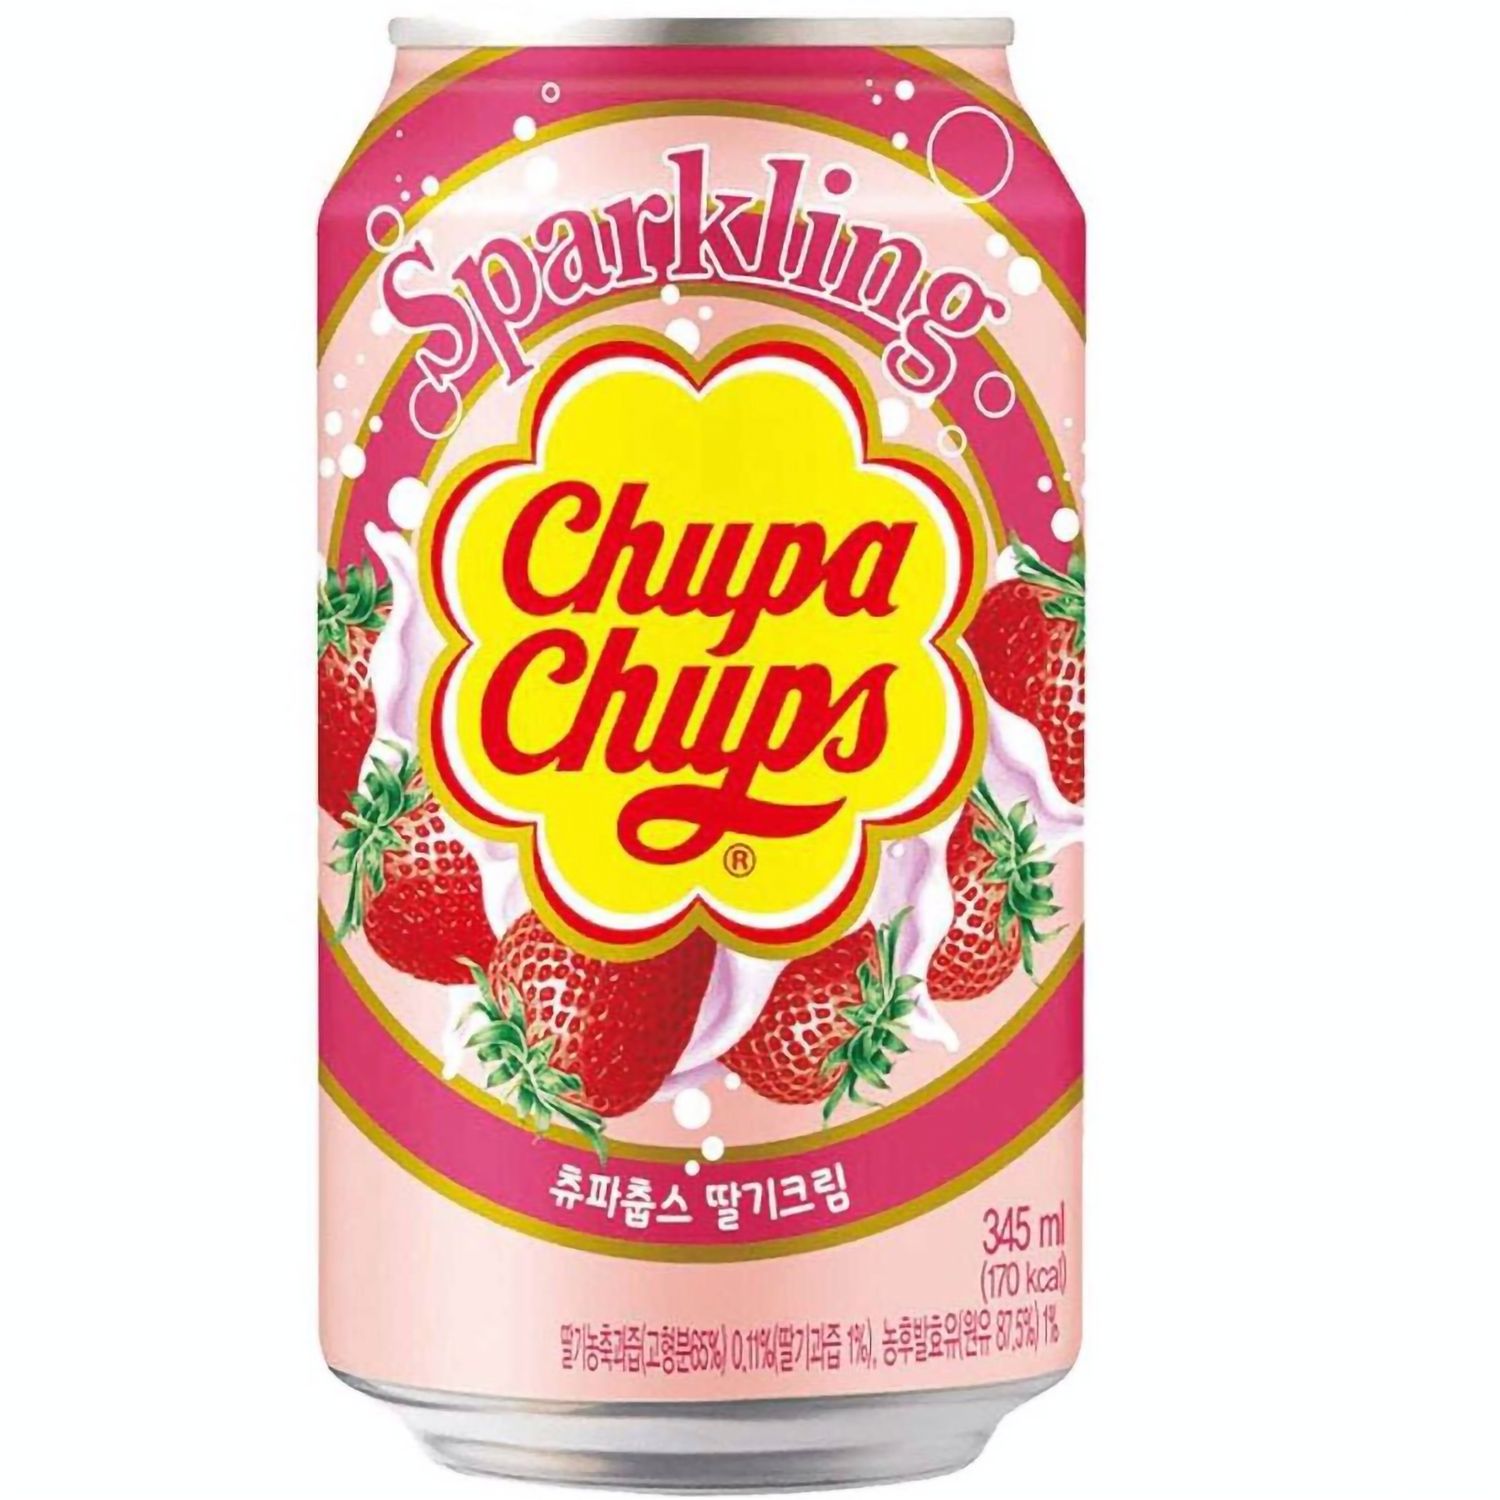 Напиток Chupa Chups Strawberry&Cream, газированный, ж/б, 345 мл (888450) - фото 1